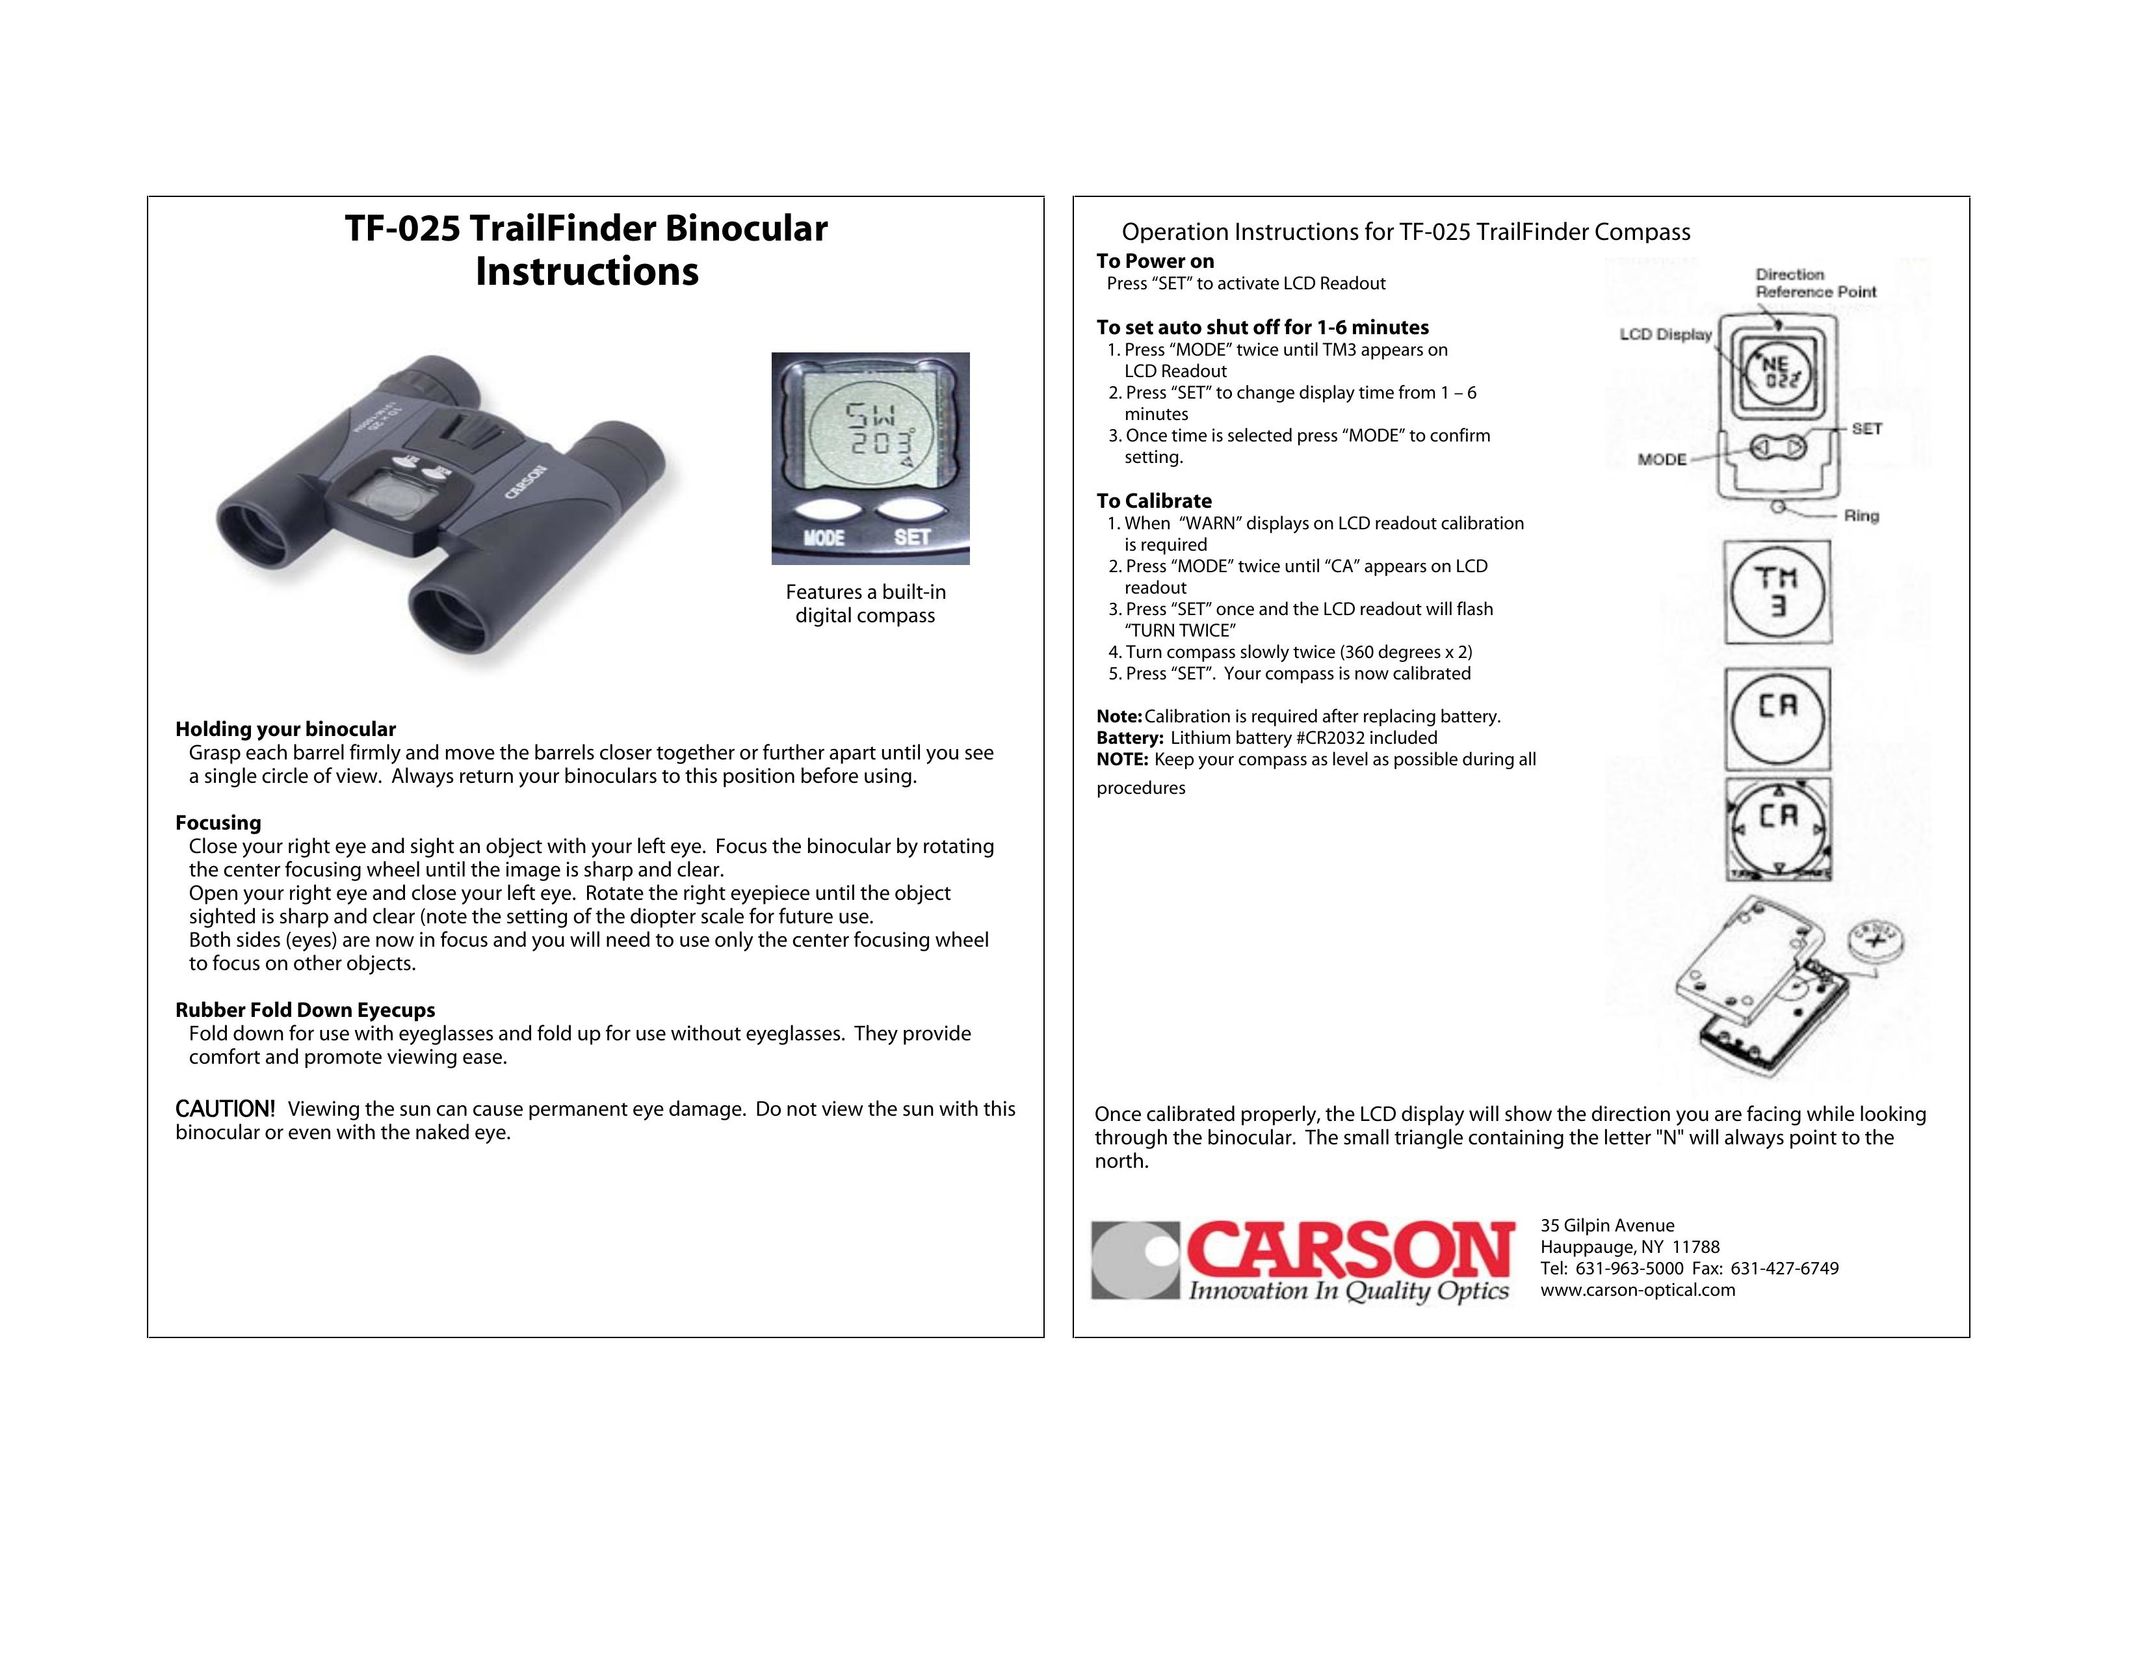 Carson Optical TF-025 Binoculars User Manual